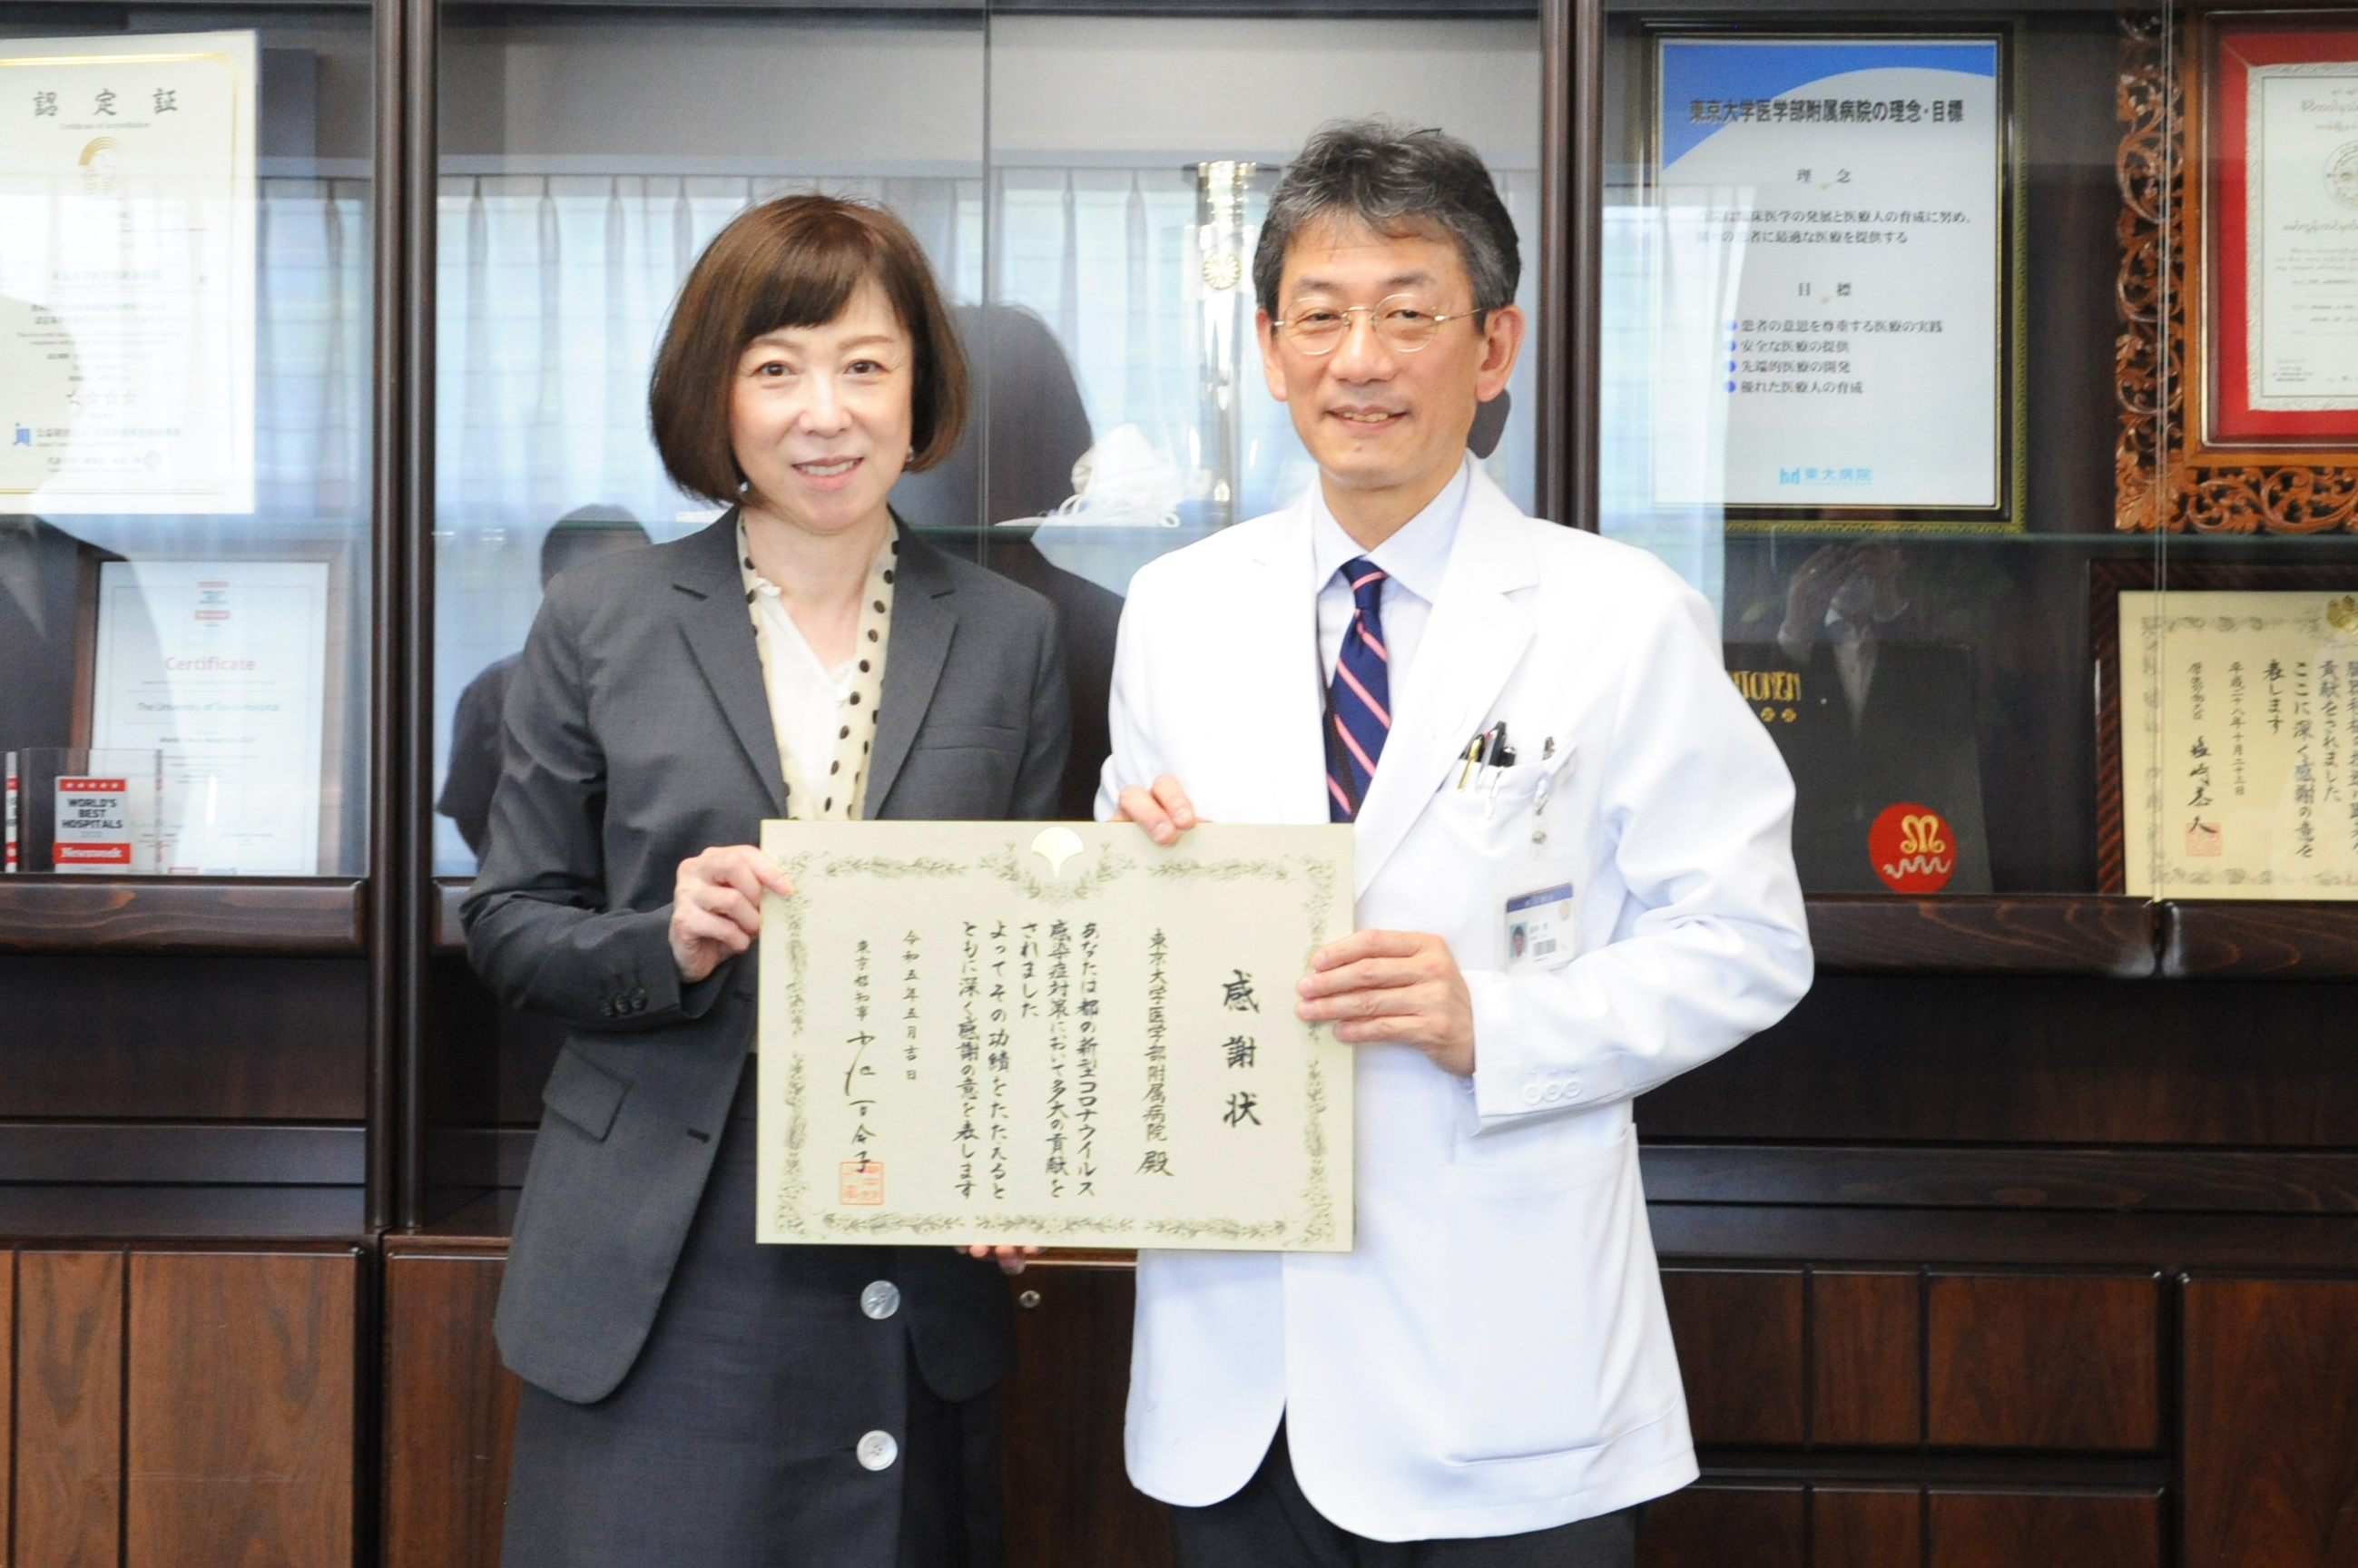 東京都から感謝状が授与されました —新型コロナウイルス感染症対策への貢献—